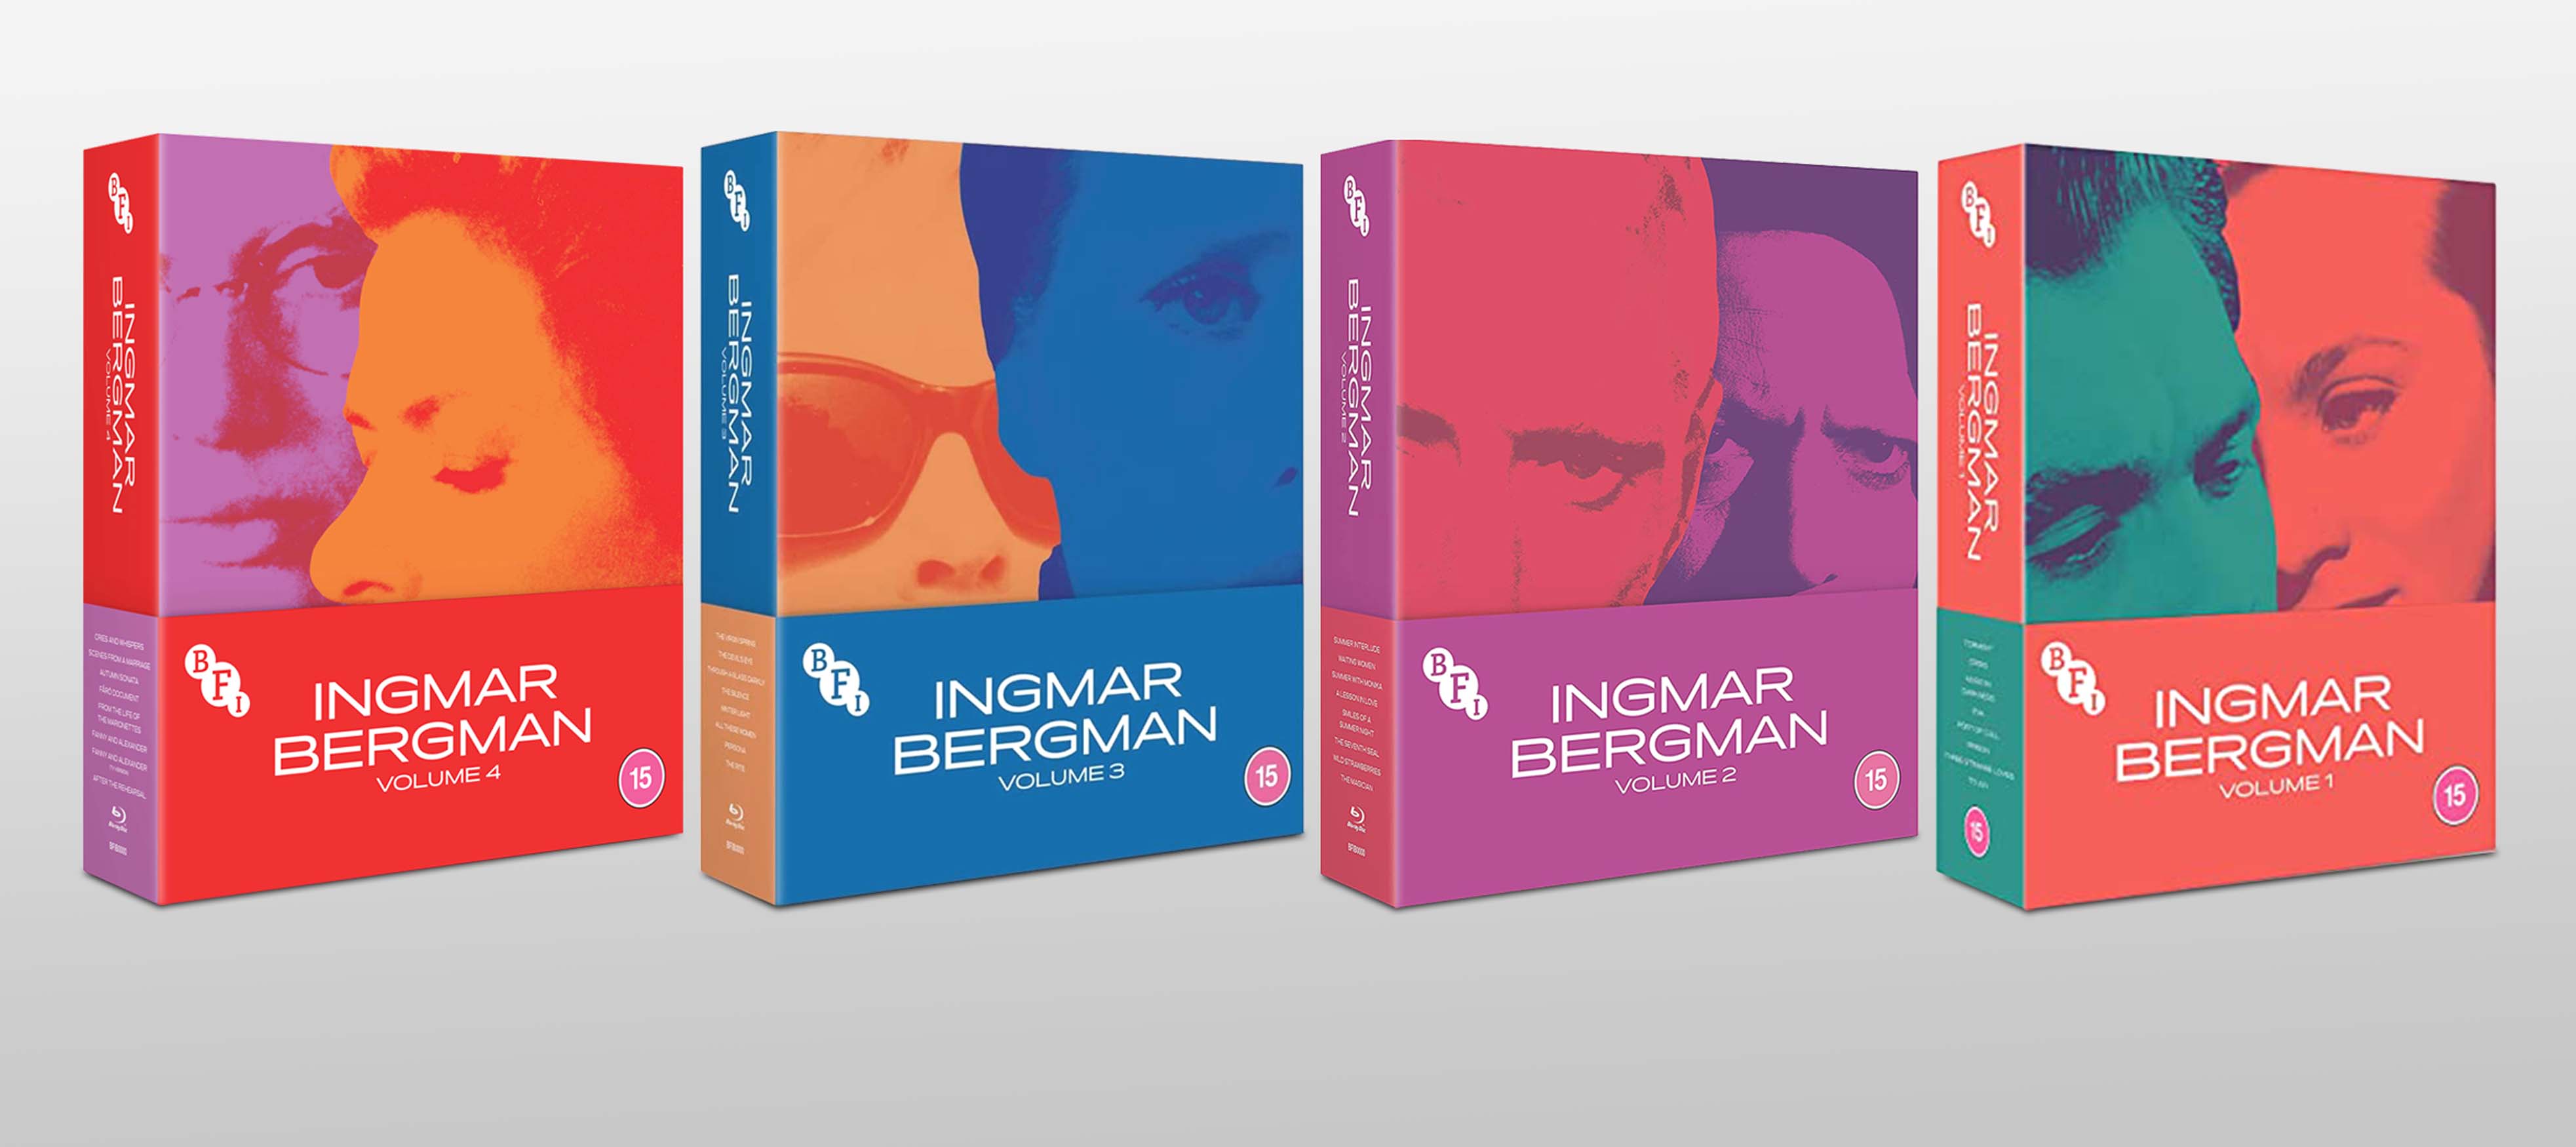 Ingmar Bergman